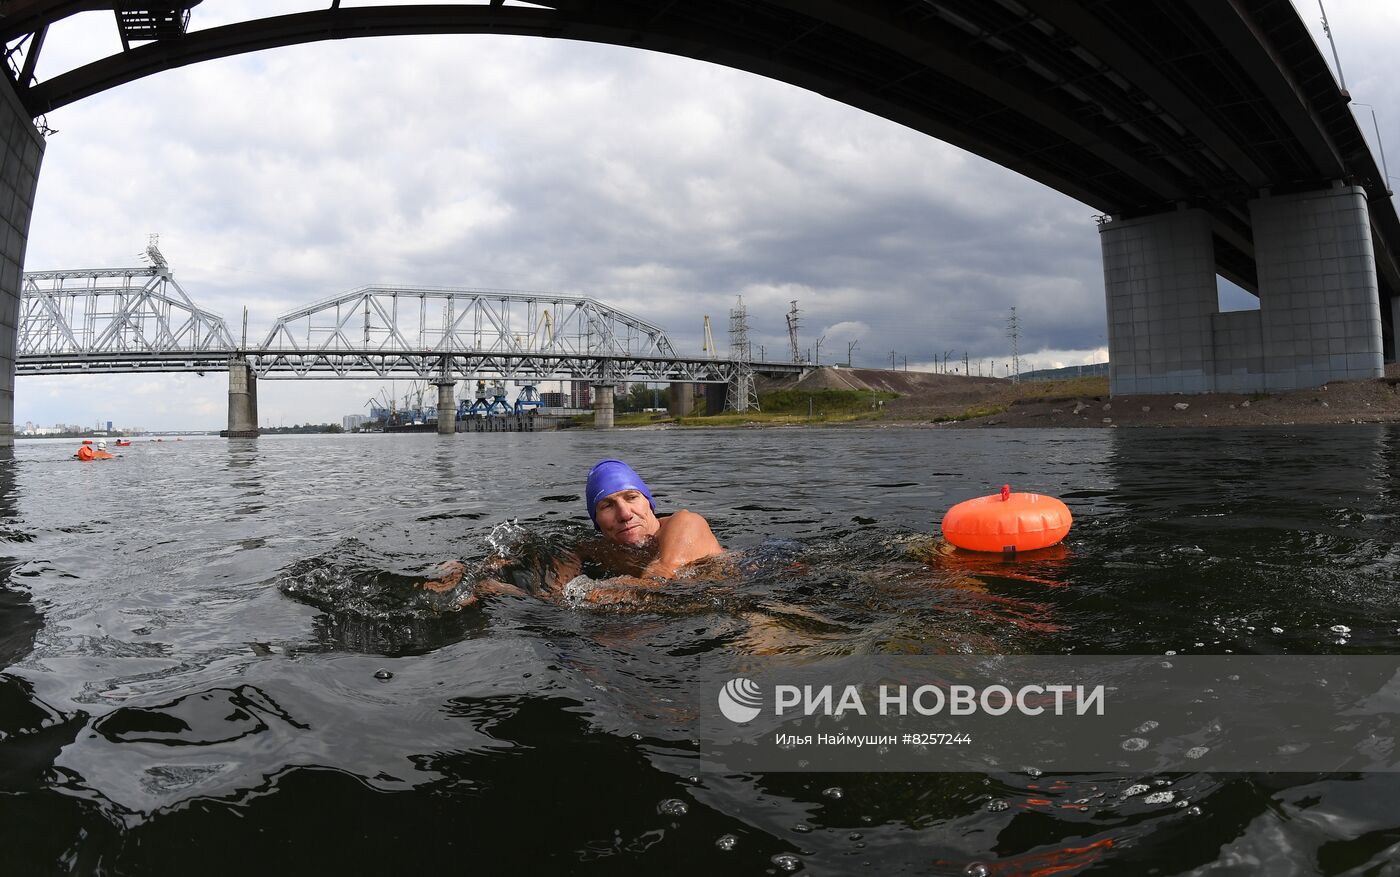 Заплыв по реке Енисей в честь Дня государственного флага РФ